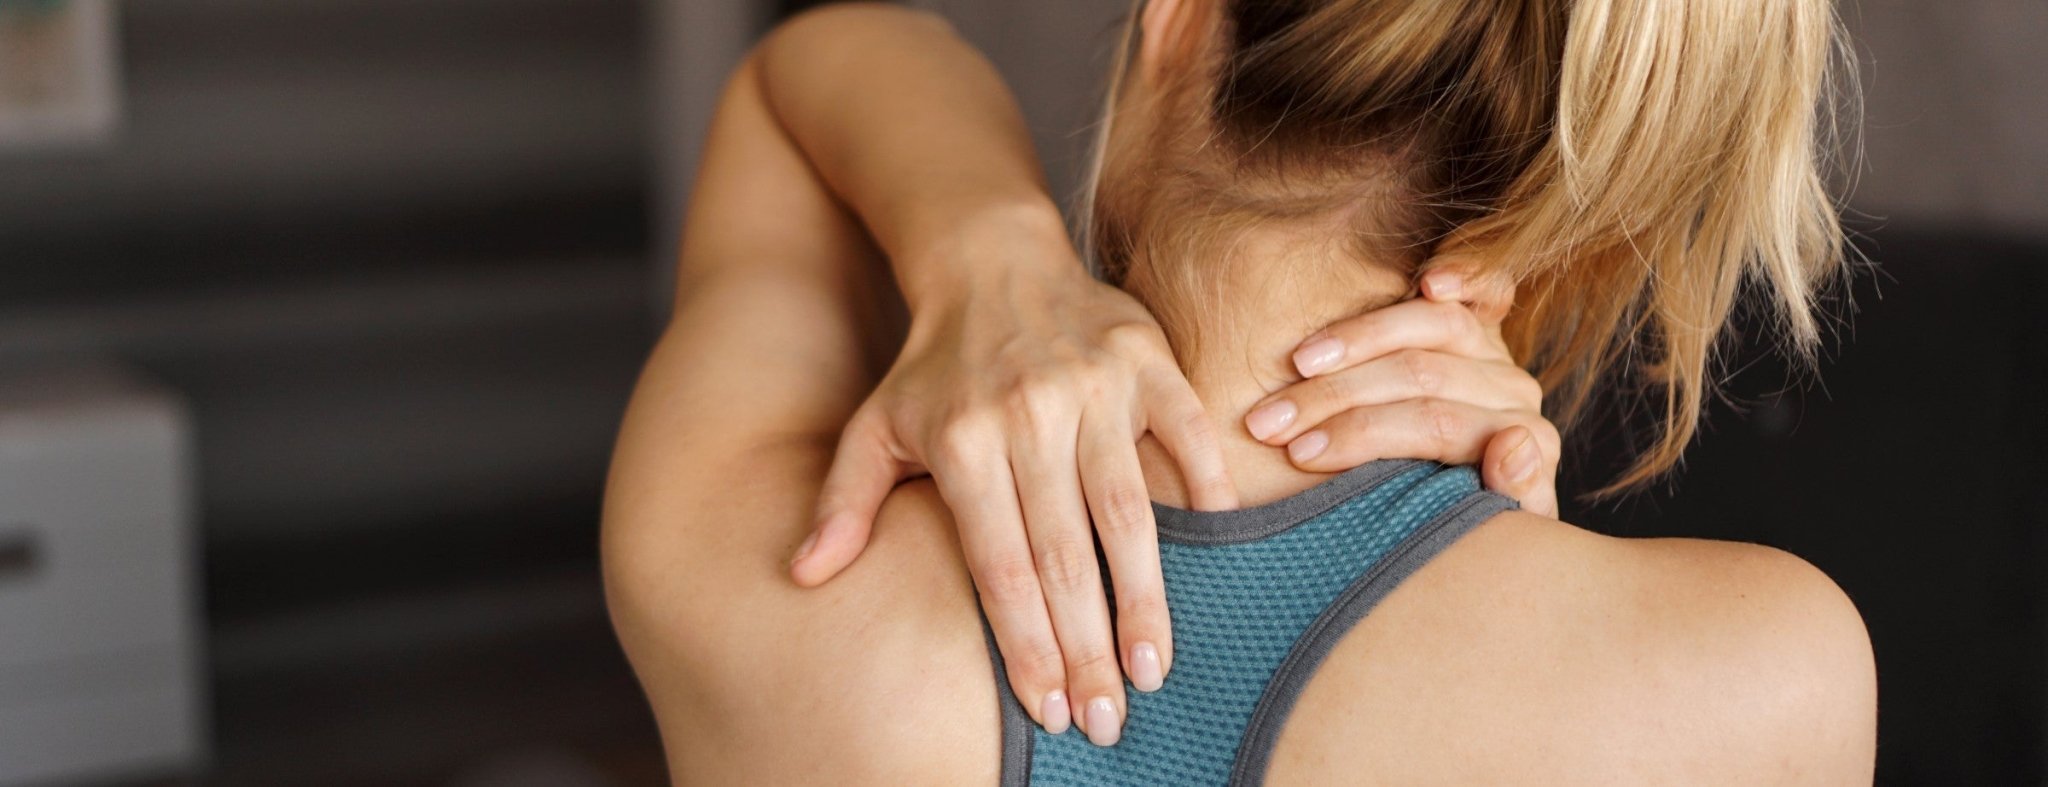 Massagesessel für sportlich Aktive | Massagesessel Welt